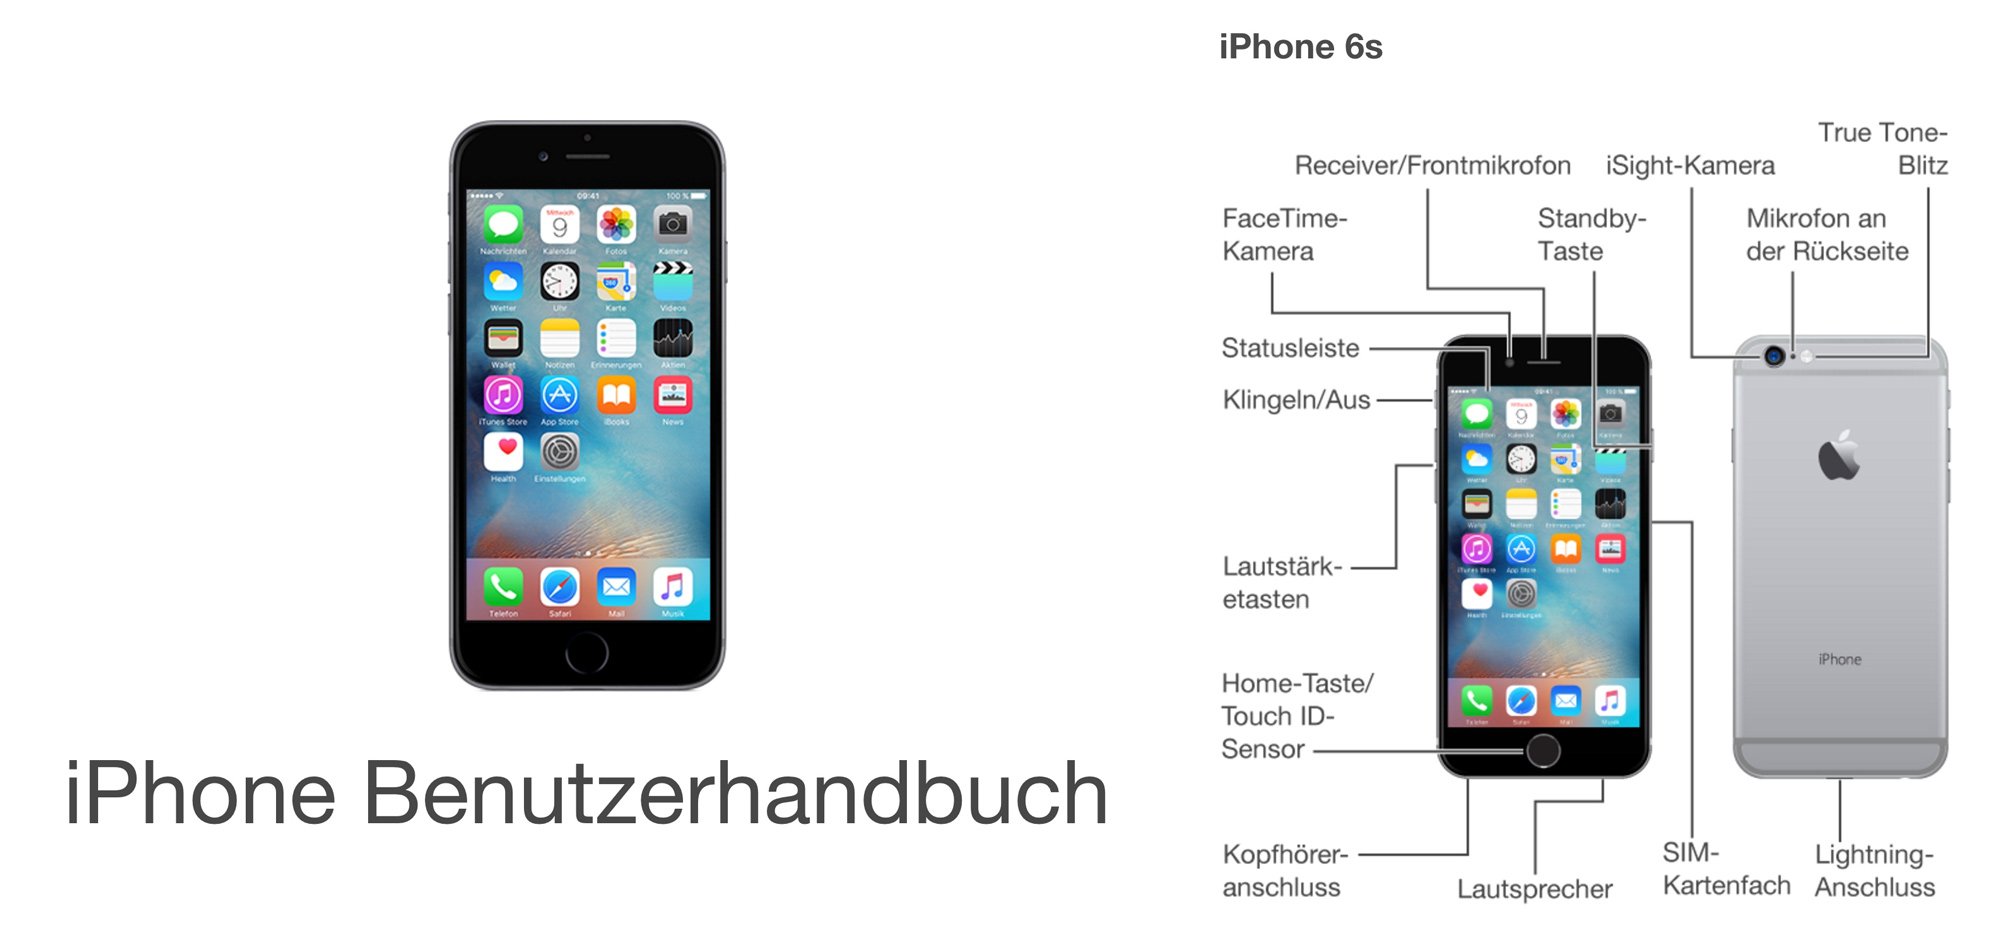 iOS 9: deutsches iPhone 6S Benutzerhandbuch (Download)2000 x 939